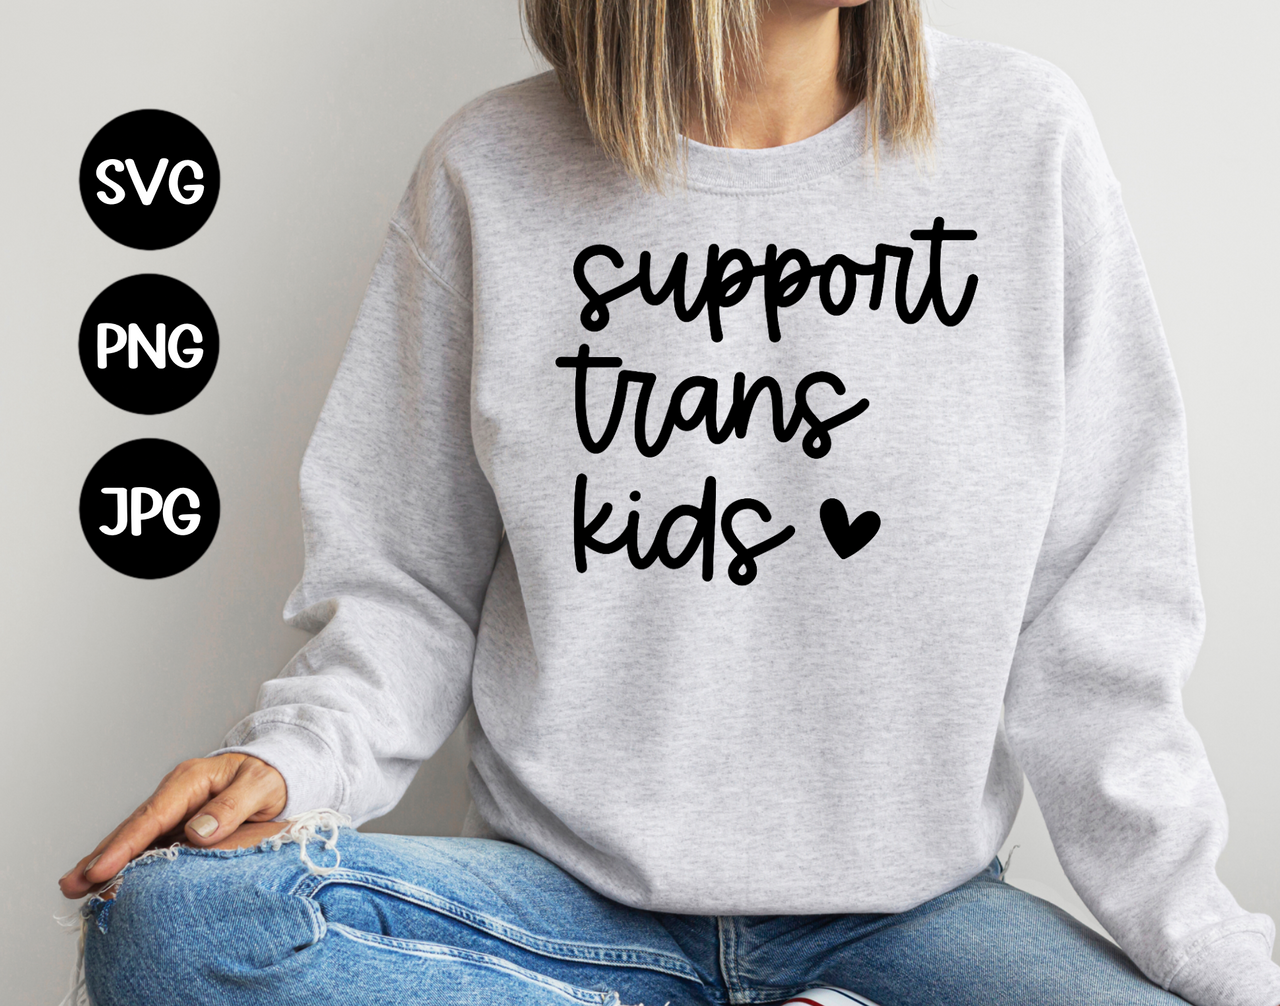 Support trans kids - digital file